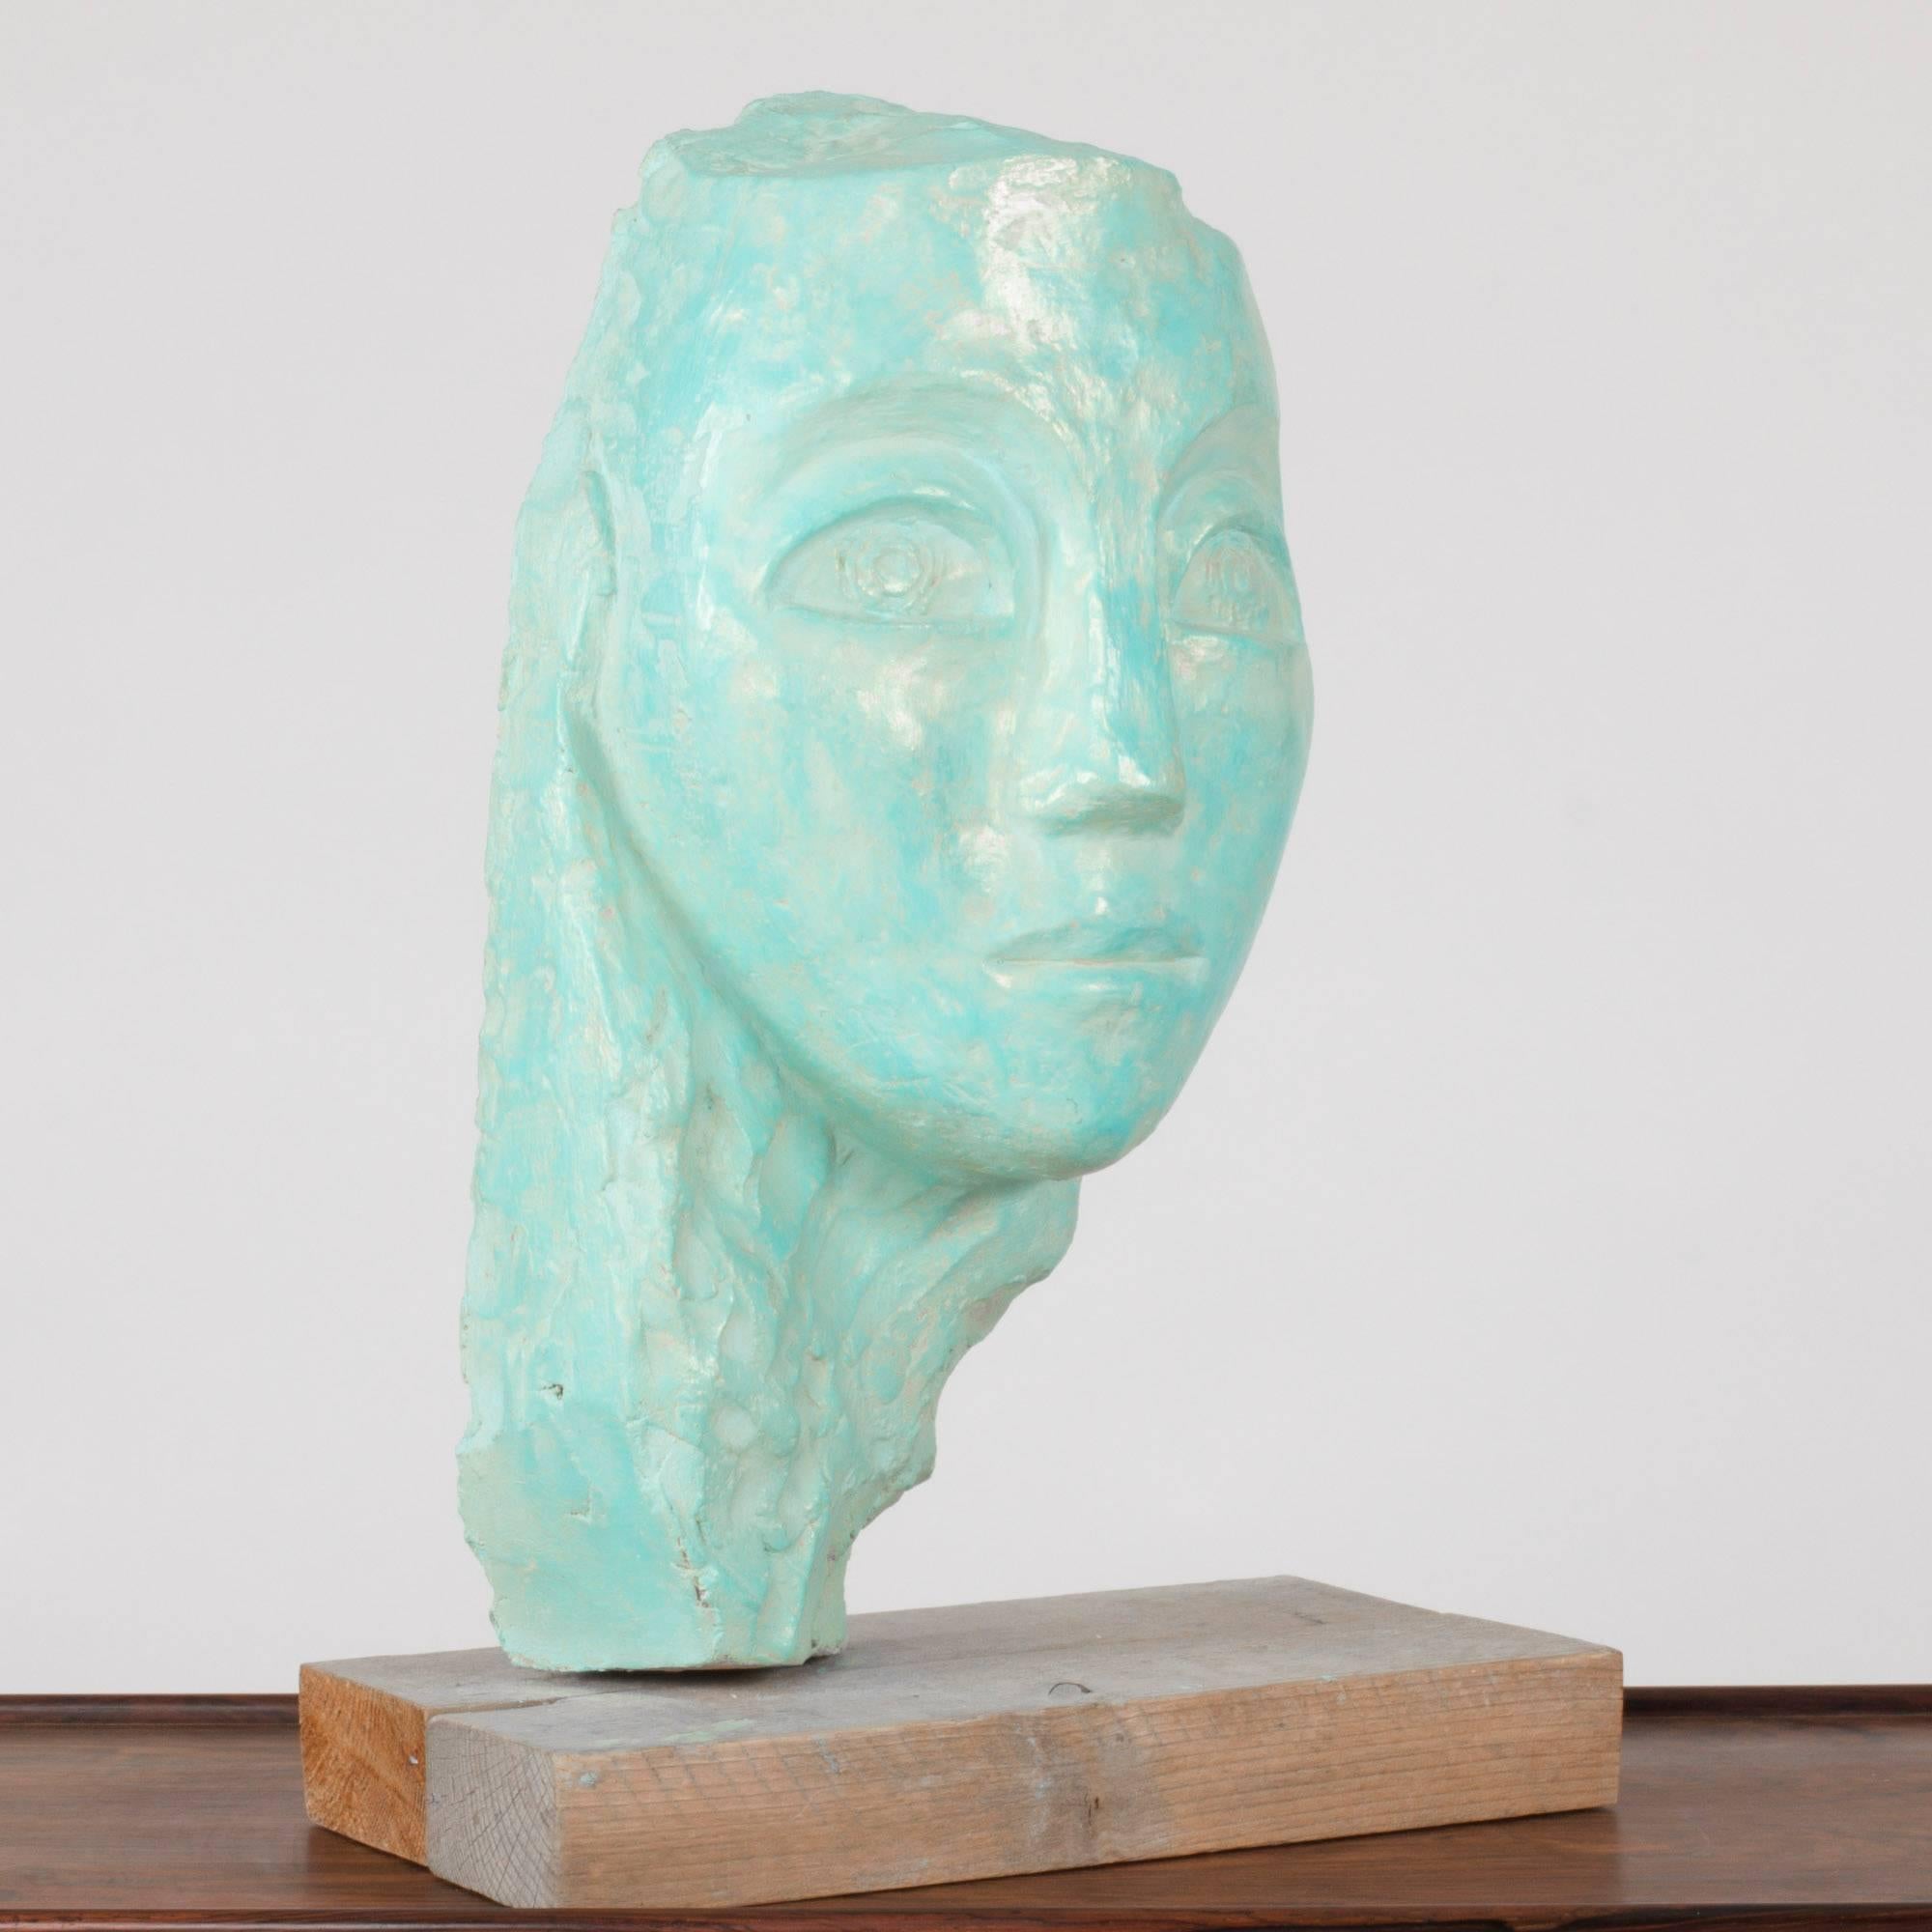 Sculpture en faïence d'un visage par Lennart Olausson. Turquoise glacé avec une légère brillance.

Lennart Olausson (né en 1944) est un artiste suédois, formé à Konstfack de 1961 à 1965 et à la Kungliga Konsthögskolan (Académie royale des arts de